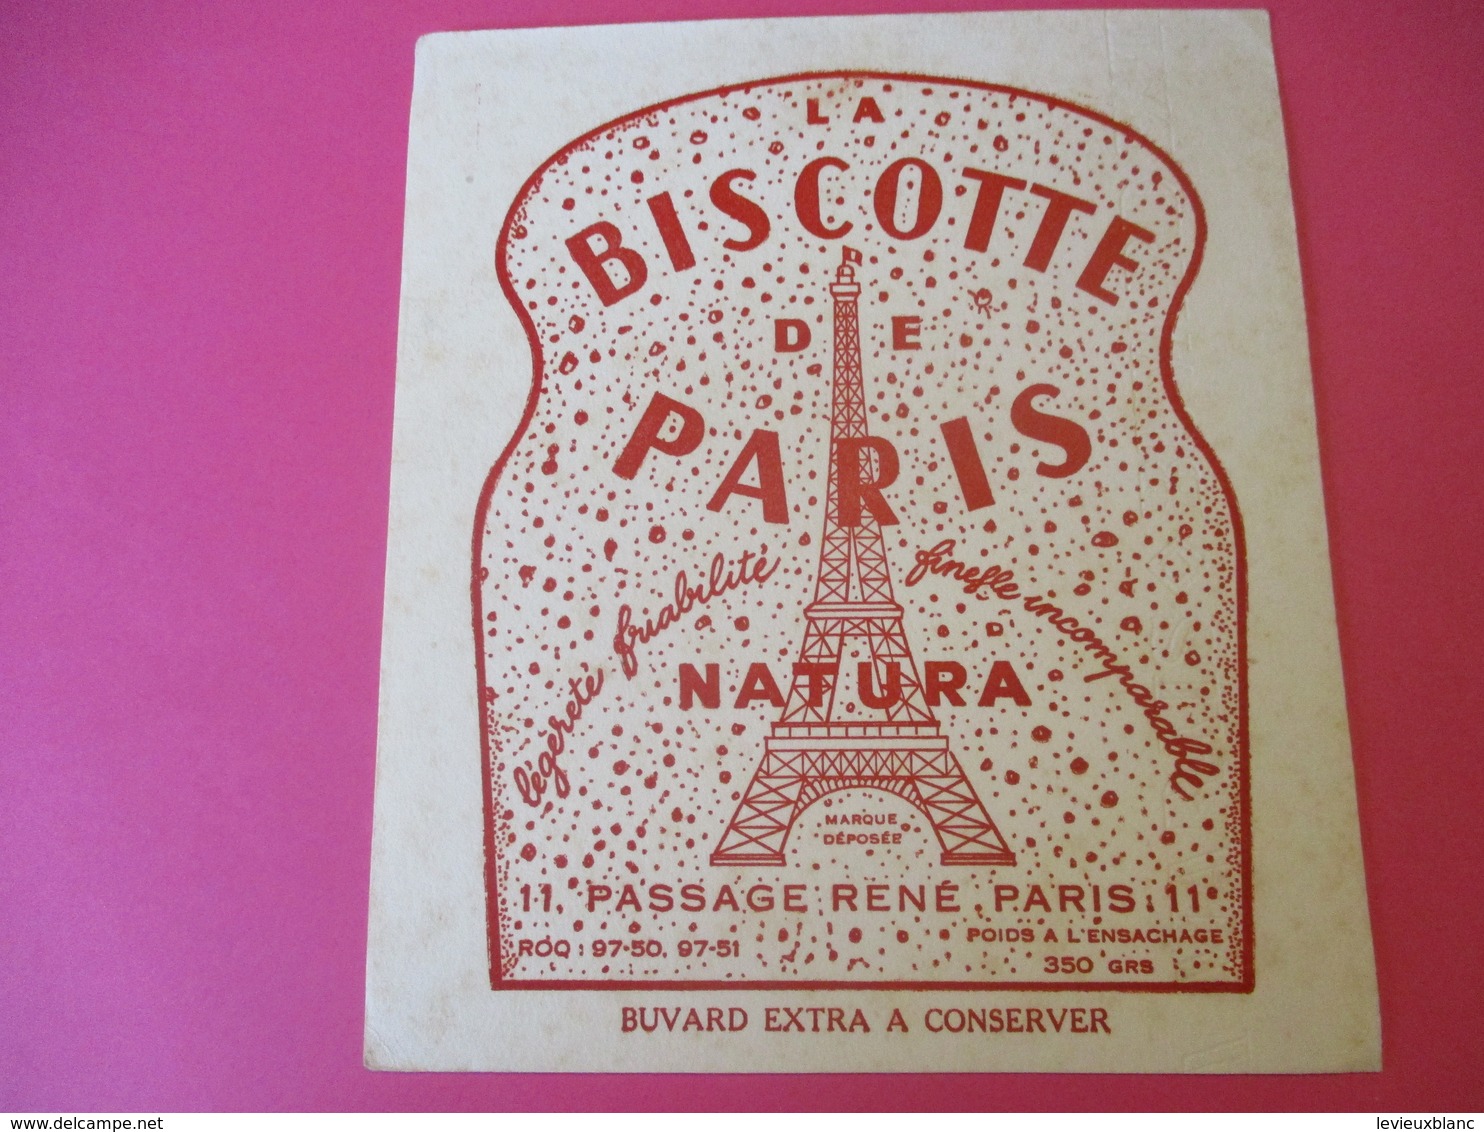 Buvard/La Biscotte De PARIS/NATURA/Légéreté Friabilité/Finesse Incomparable/Passage René/PARIS/Vers 1940-1960 BUV383 - Biscotti